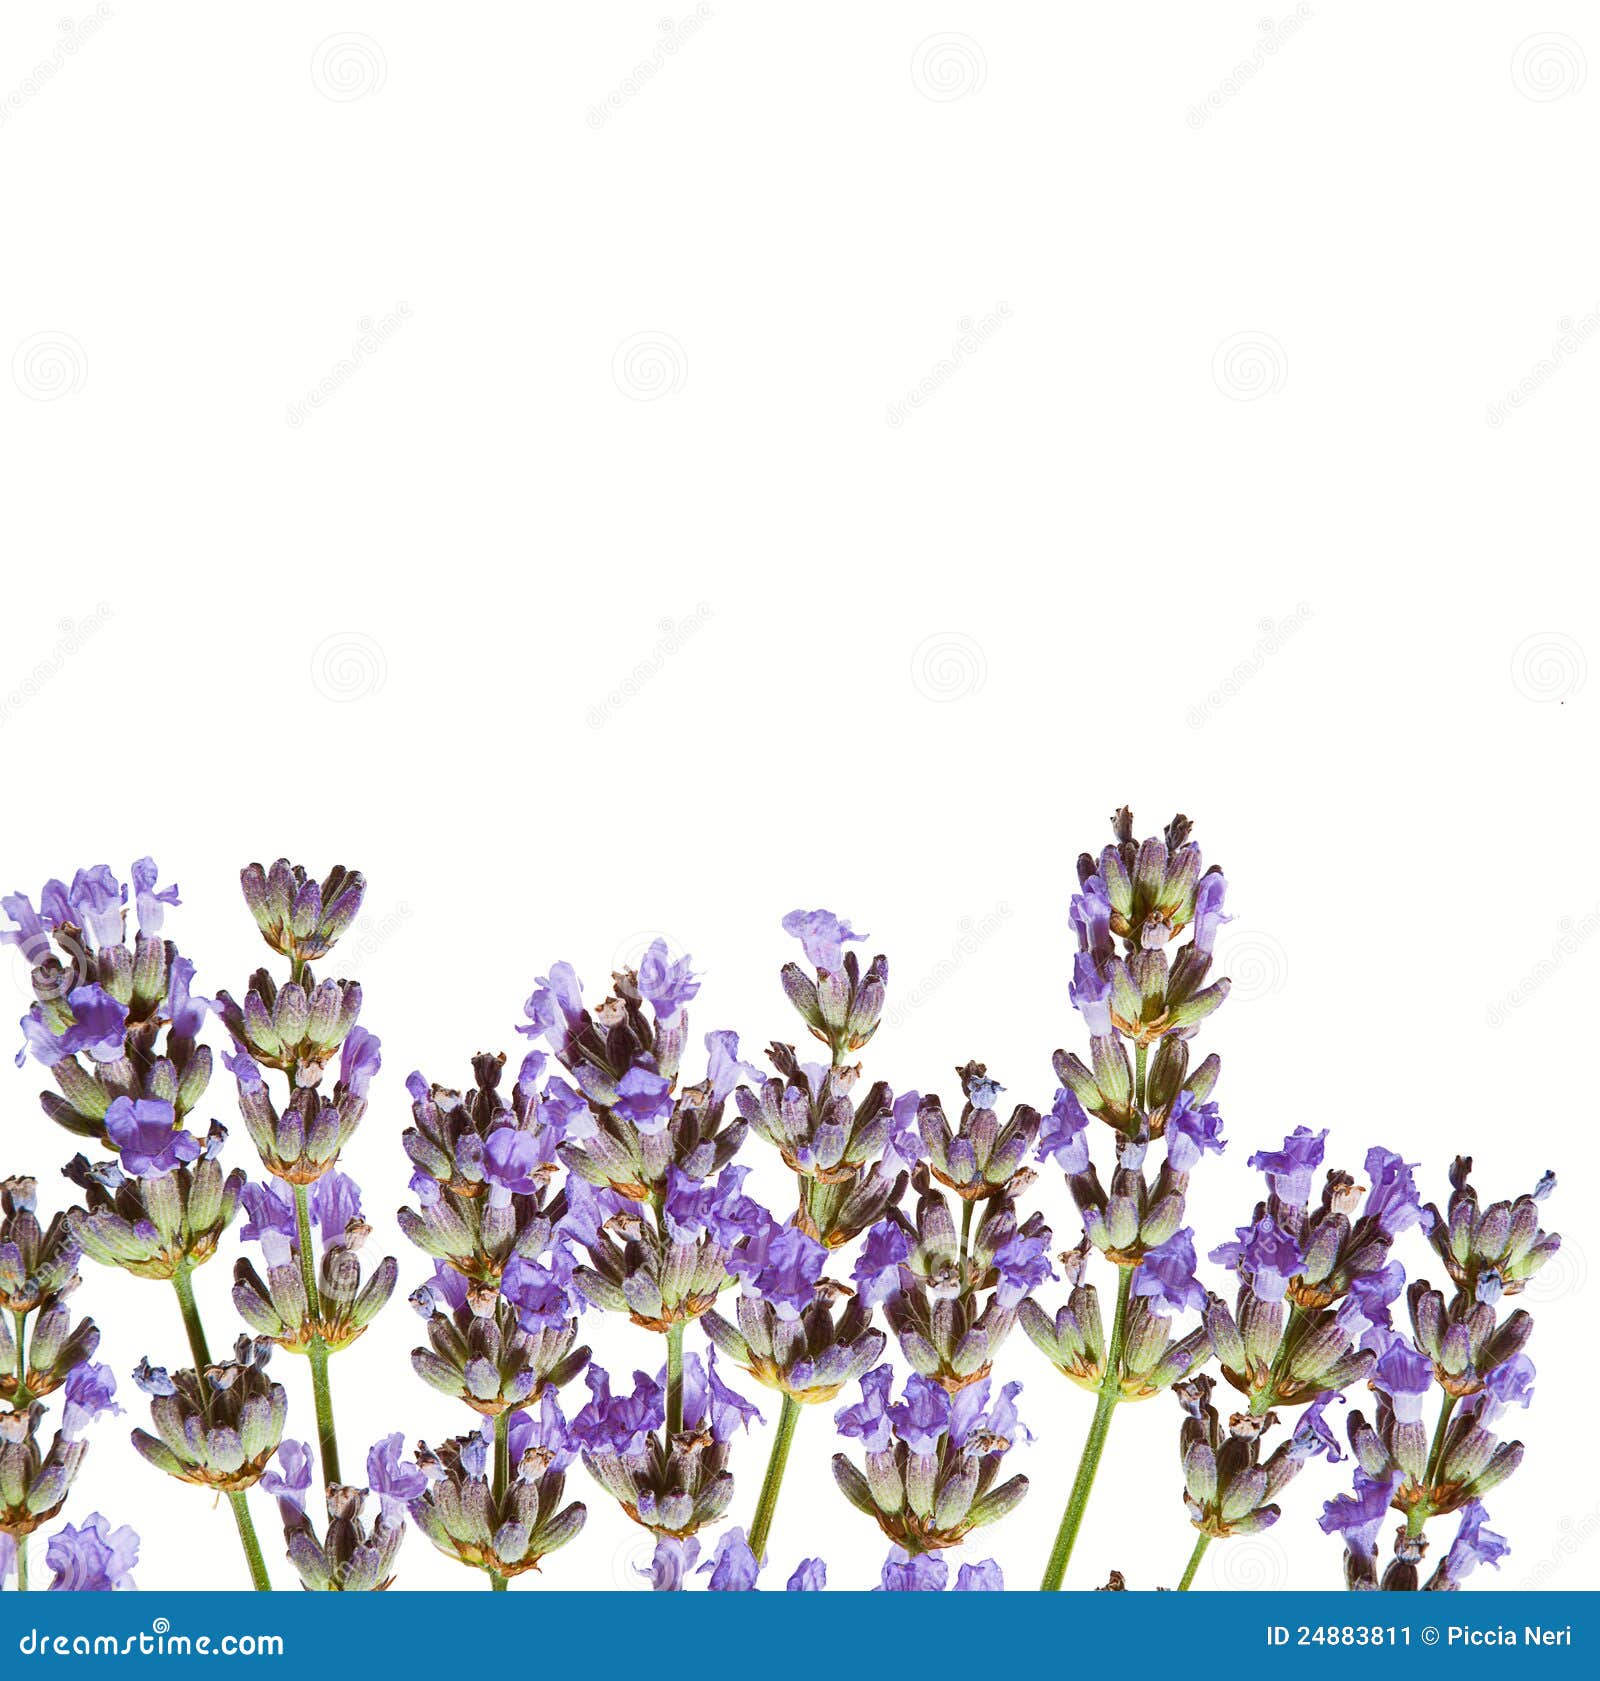 紫色玫瑰49708_花卉写真_花卉类_图库壁纸_68Design